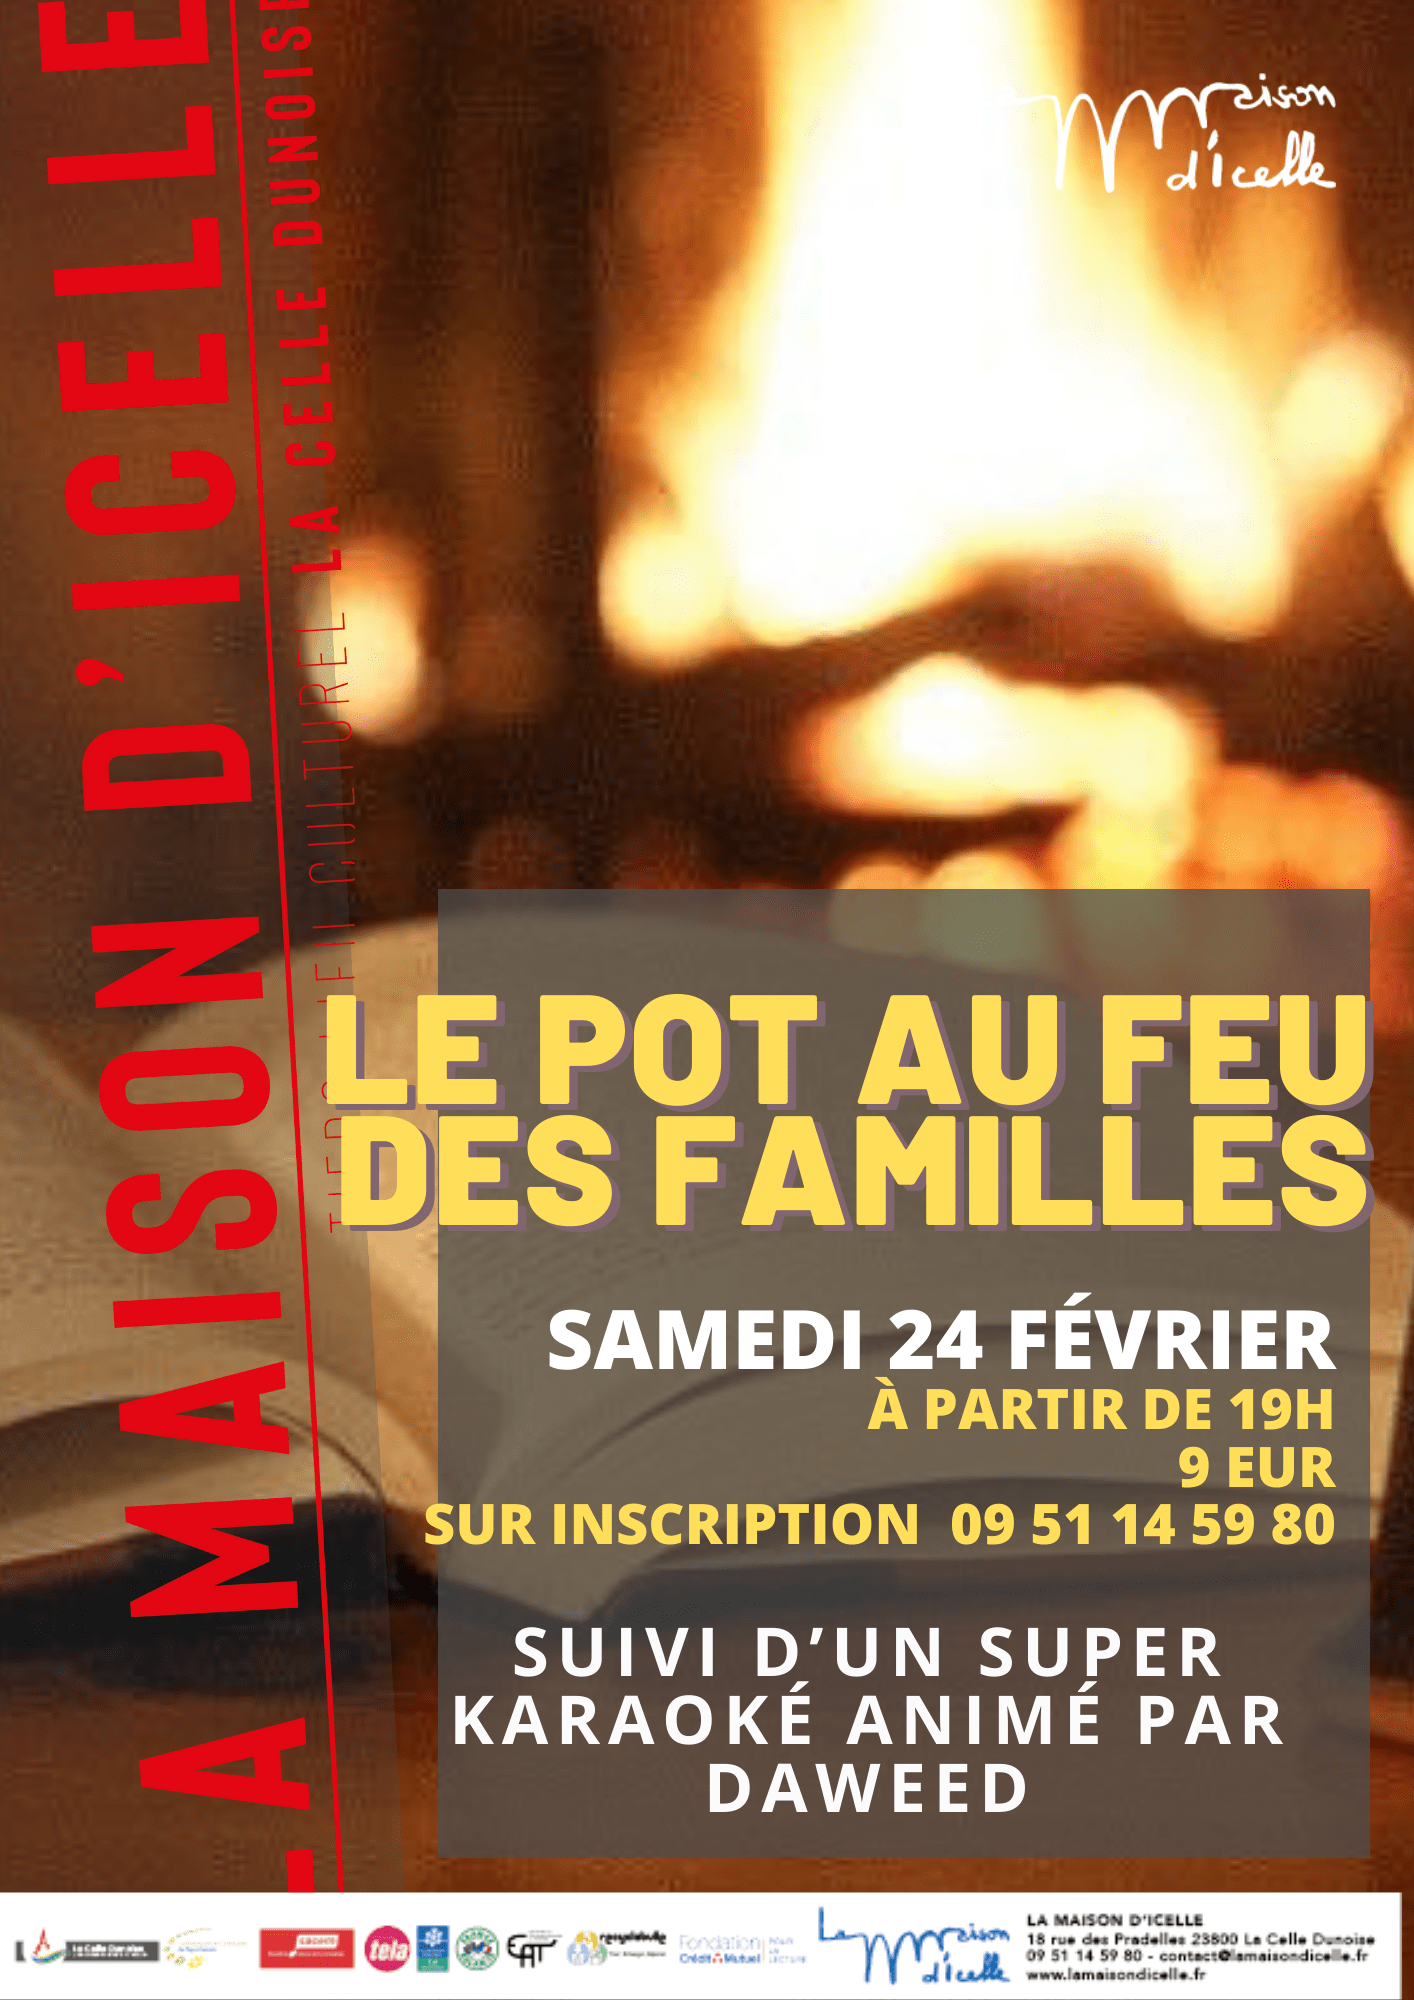 You are currently viewing Sam 24 févier <BR>Le Pot au feu des familles